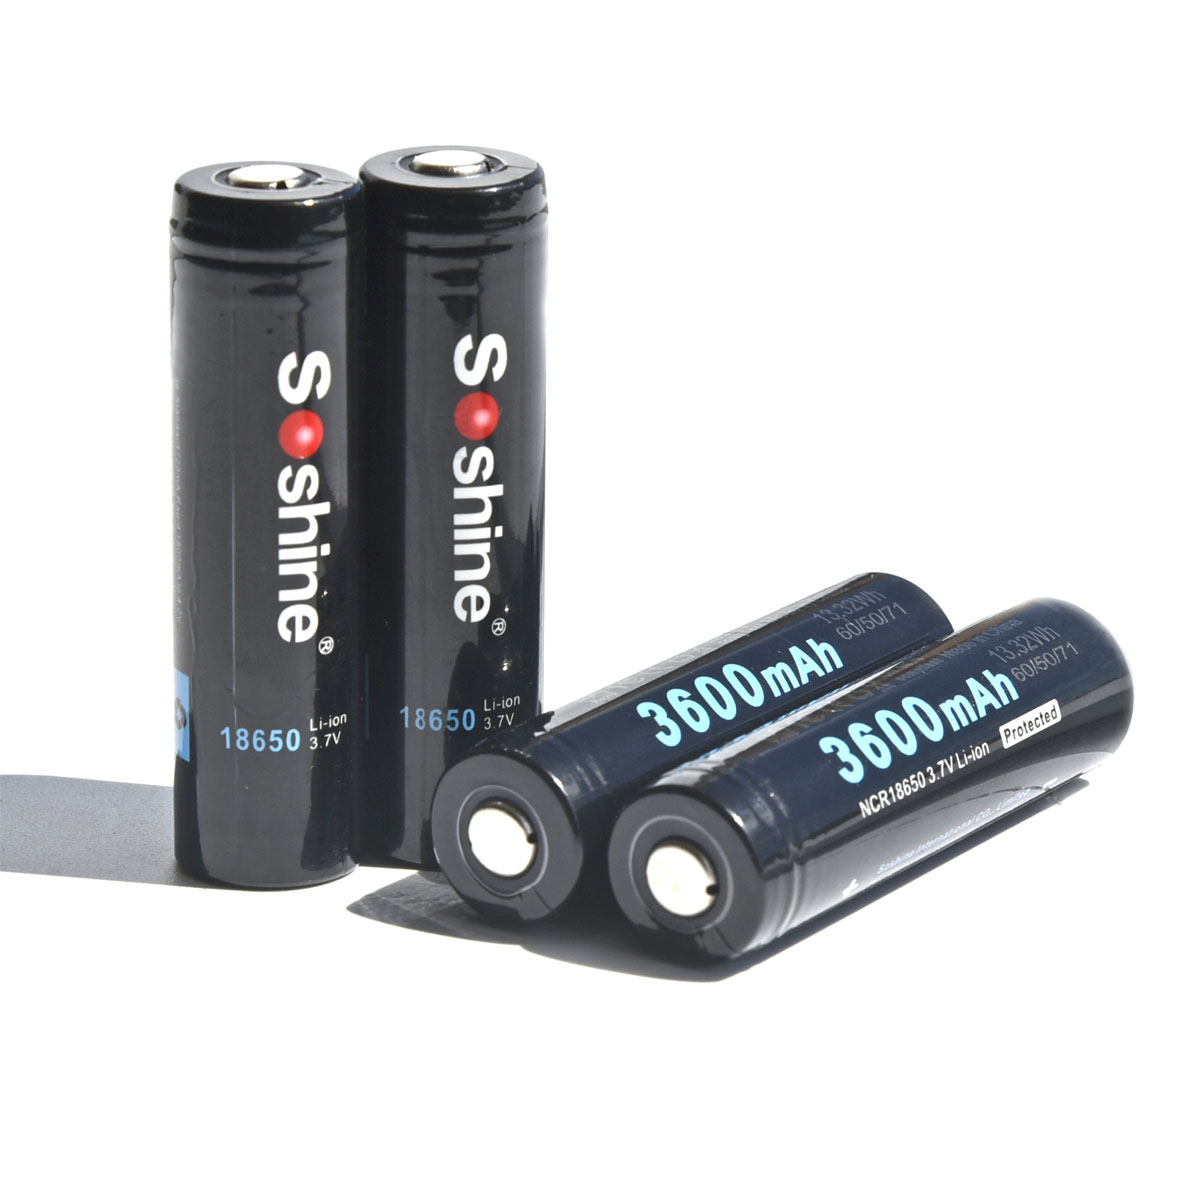 Soshine正品行货18650锂电池真是足量3600毫安时带保护电压3.7V